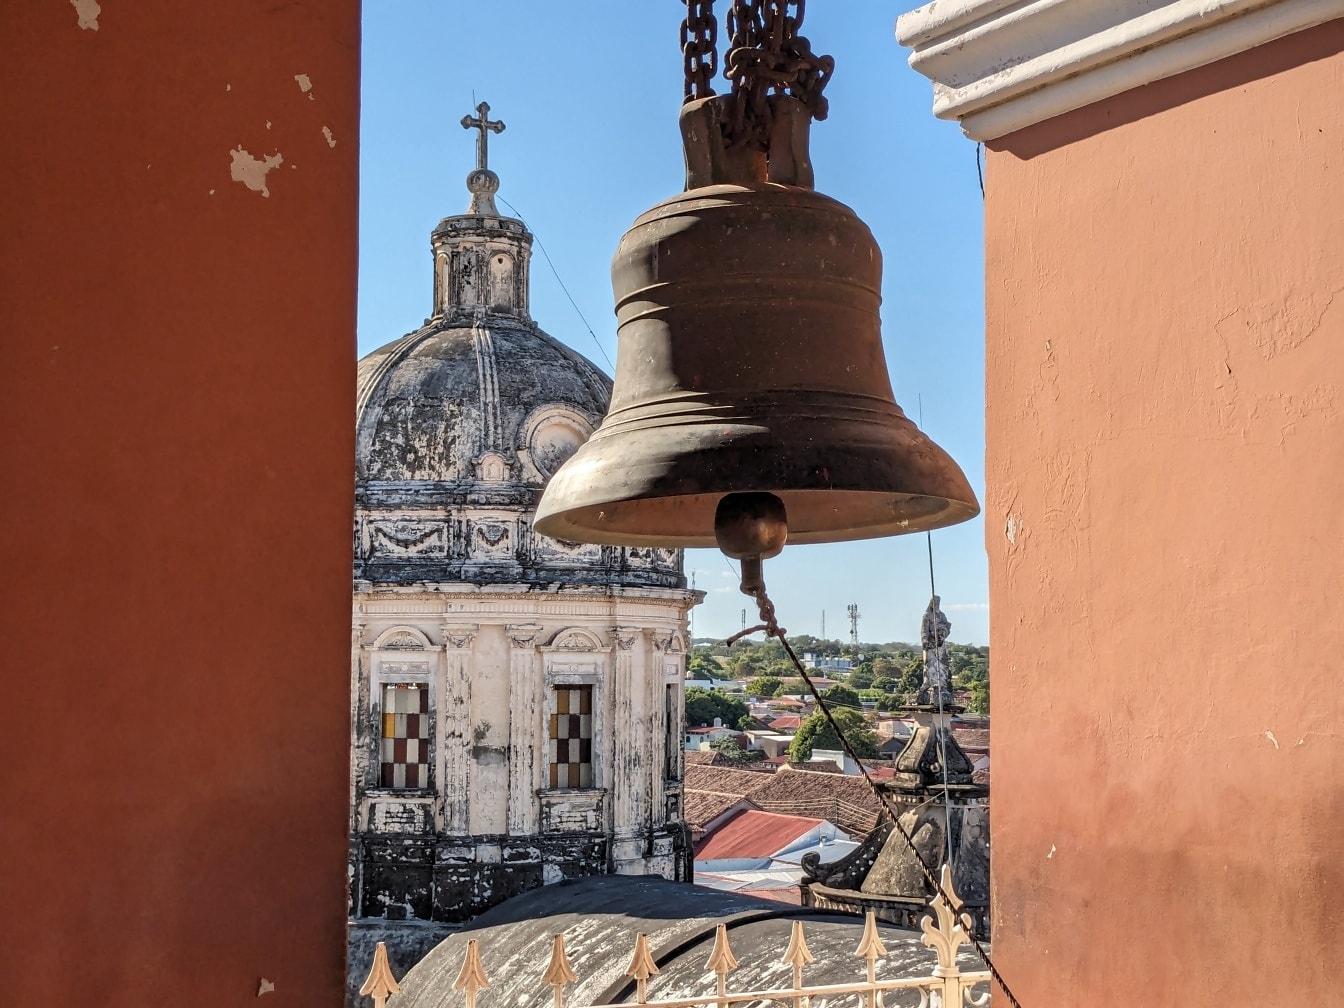 Campana de hierro fundido en un campanario de la iglesia de la Misericordia en Nicaragua en Granada